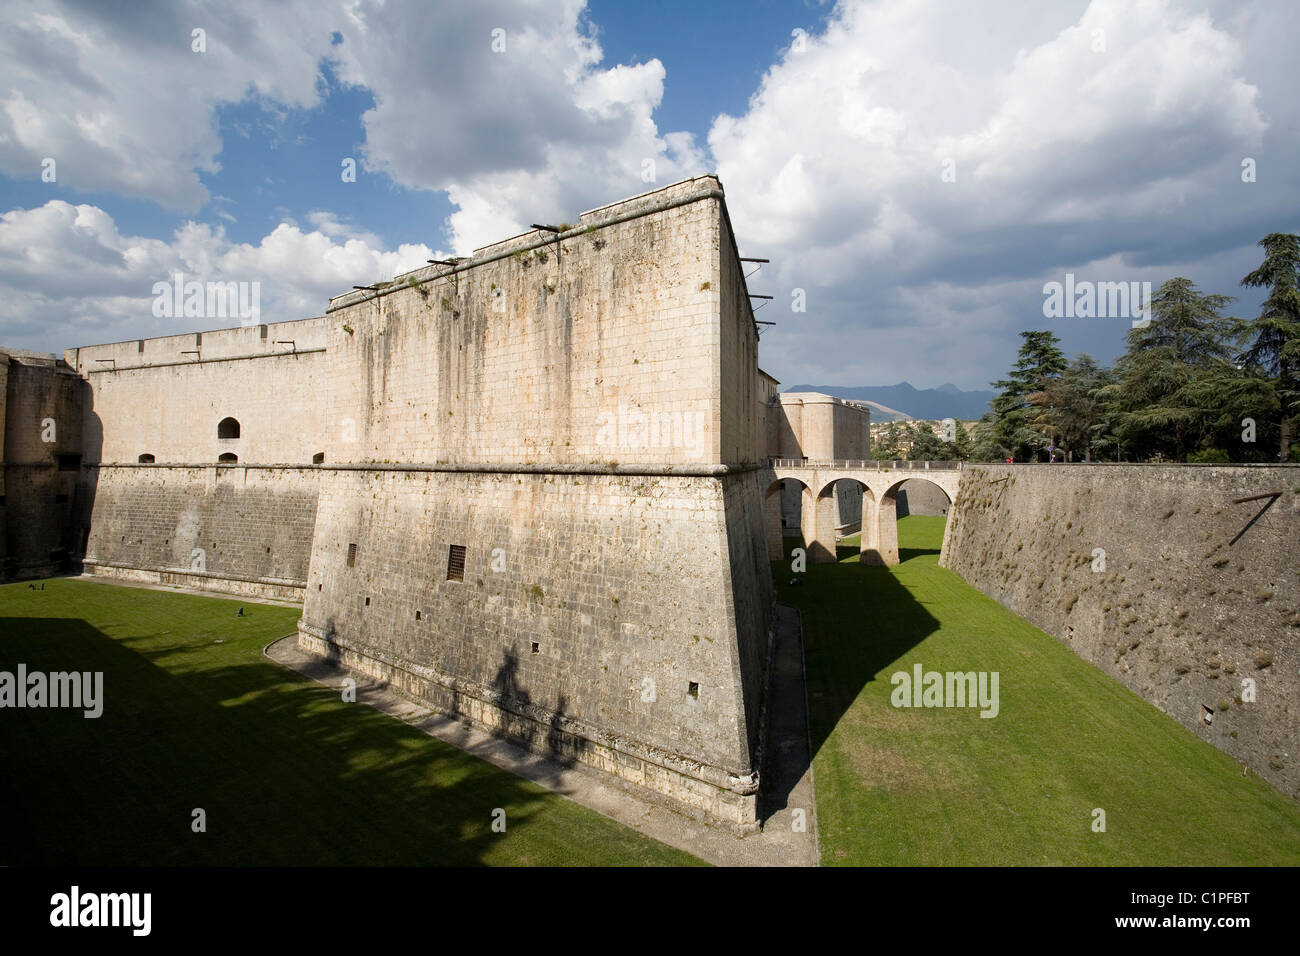 L'Italie, les Abruzzes, L'Aquila, Castello, murs du château et douves sèches Banque D'Images